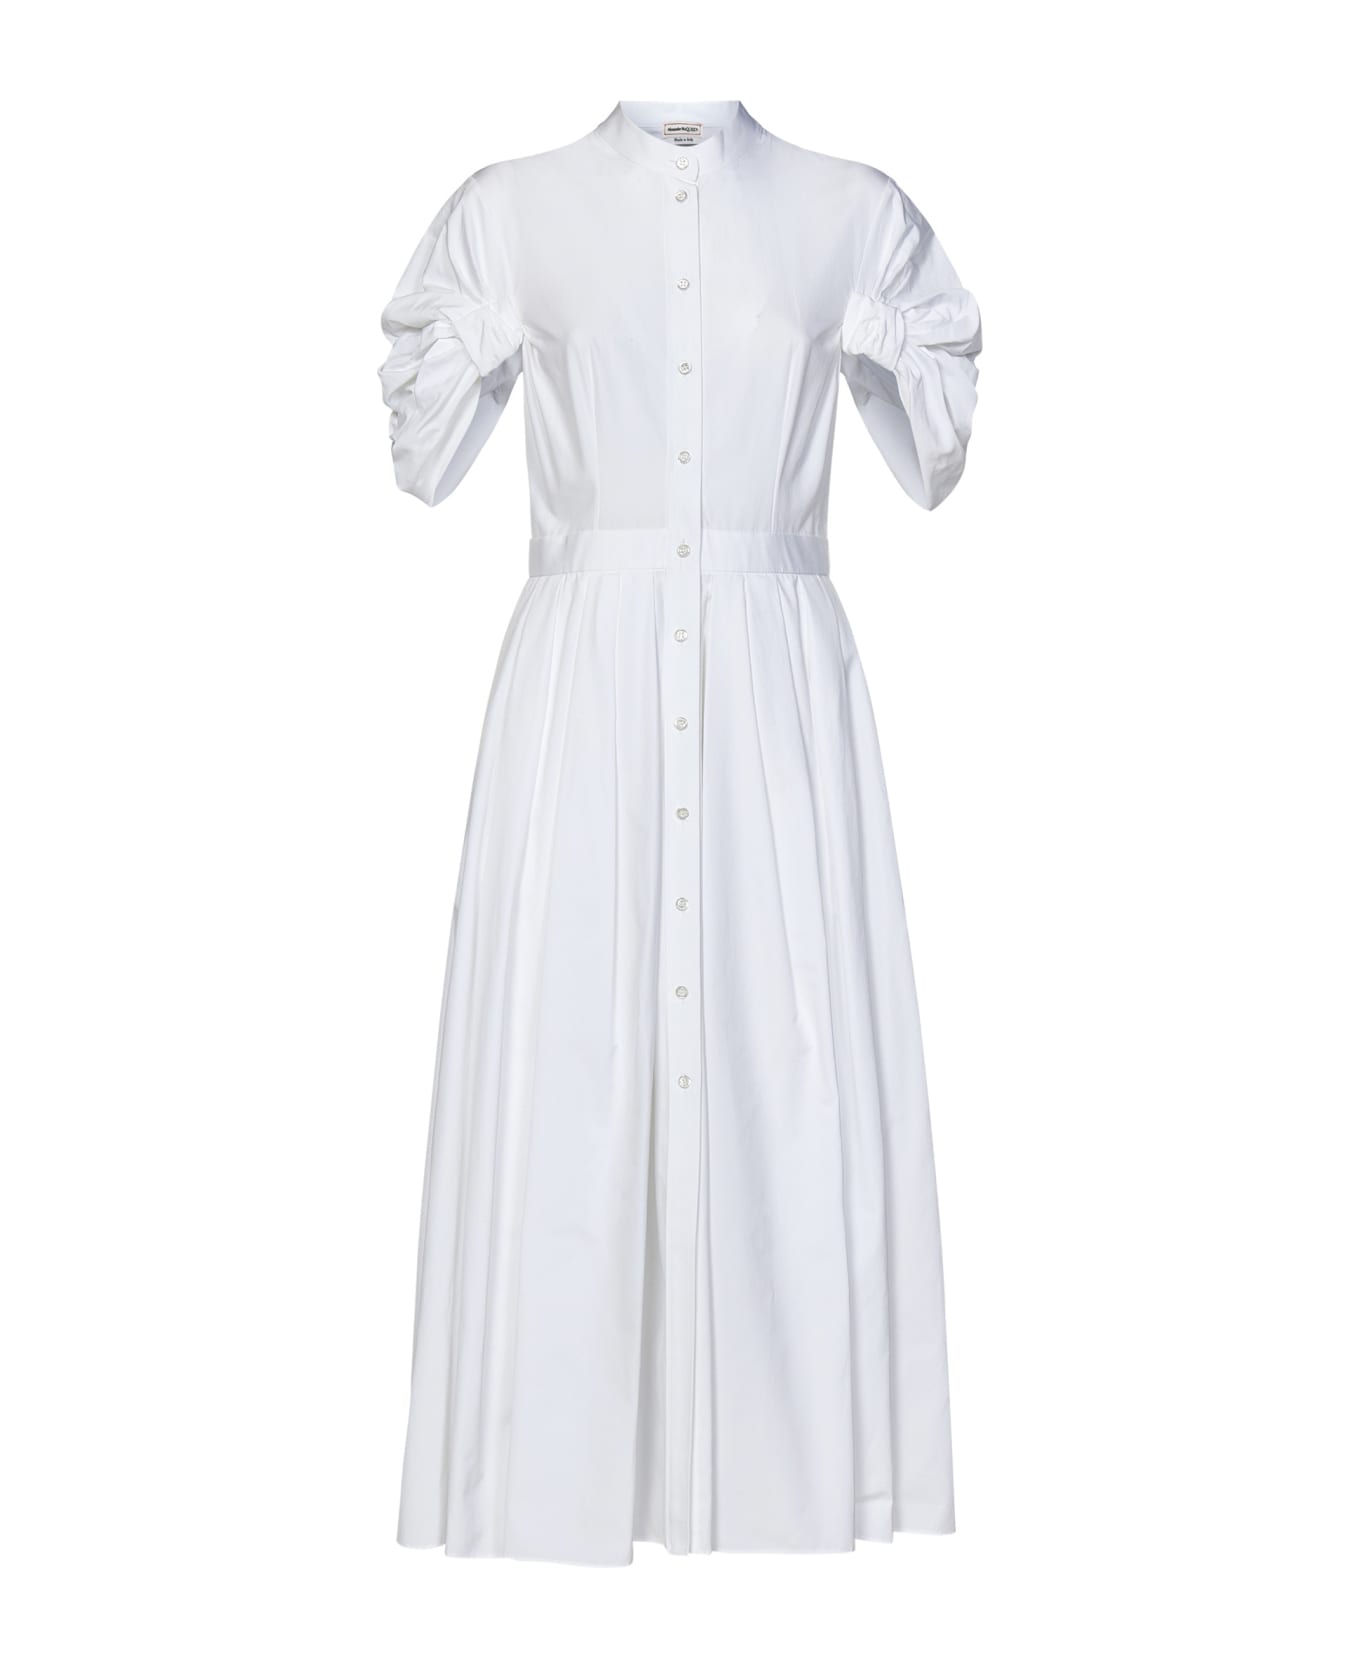 Alexander McQueen Short-sleeved Pleated Dress - White